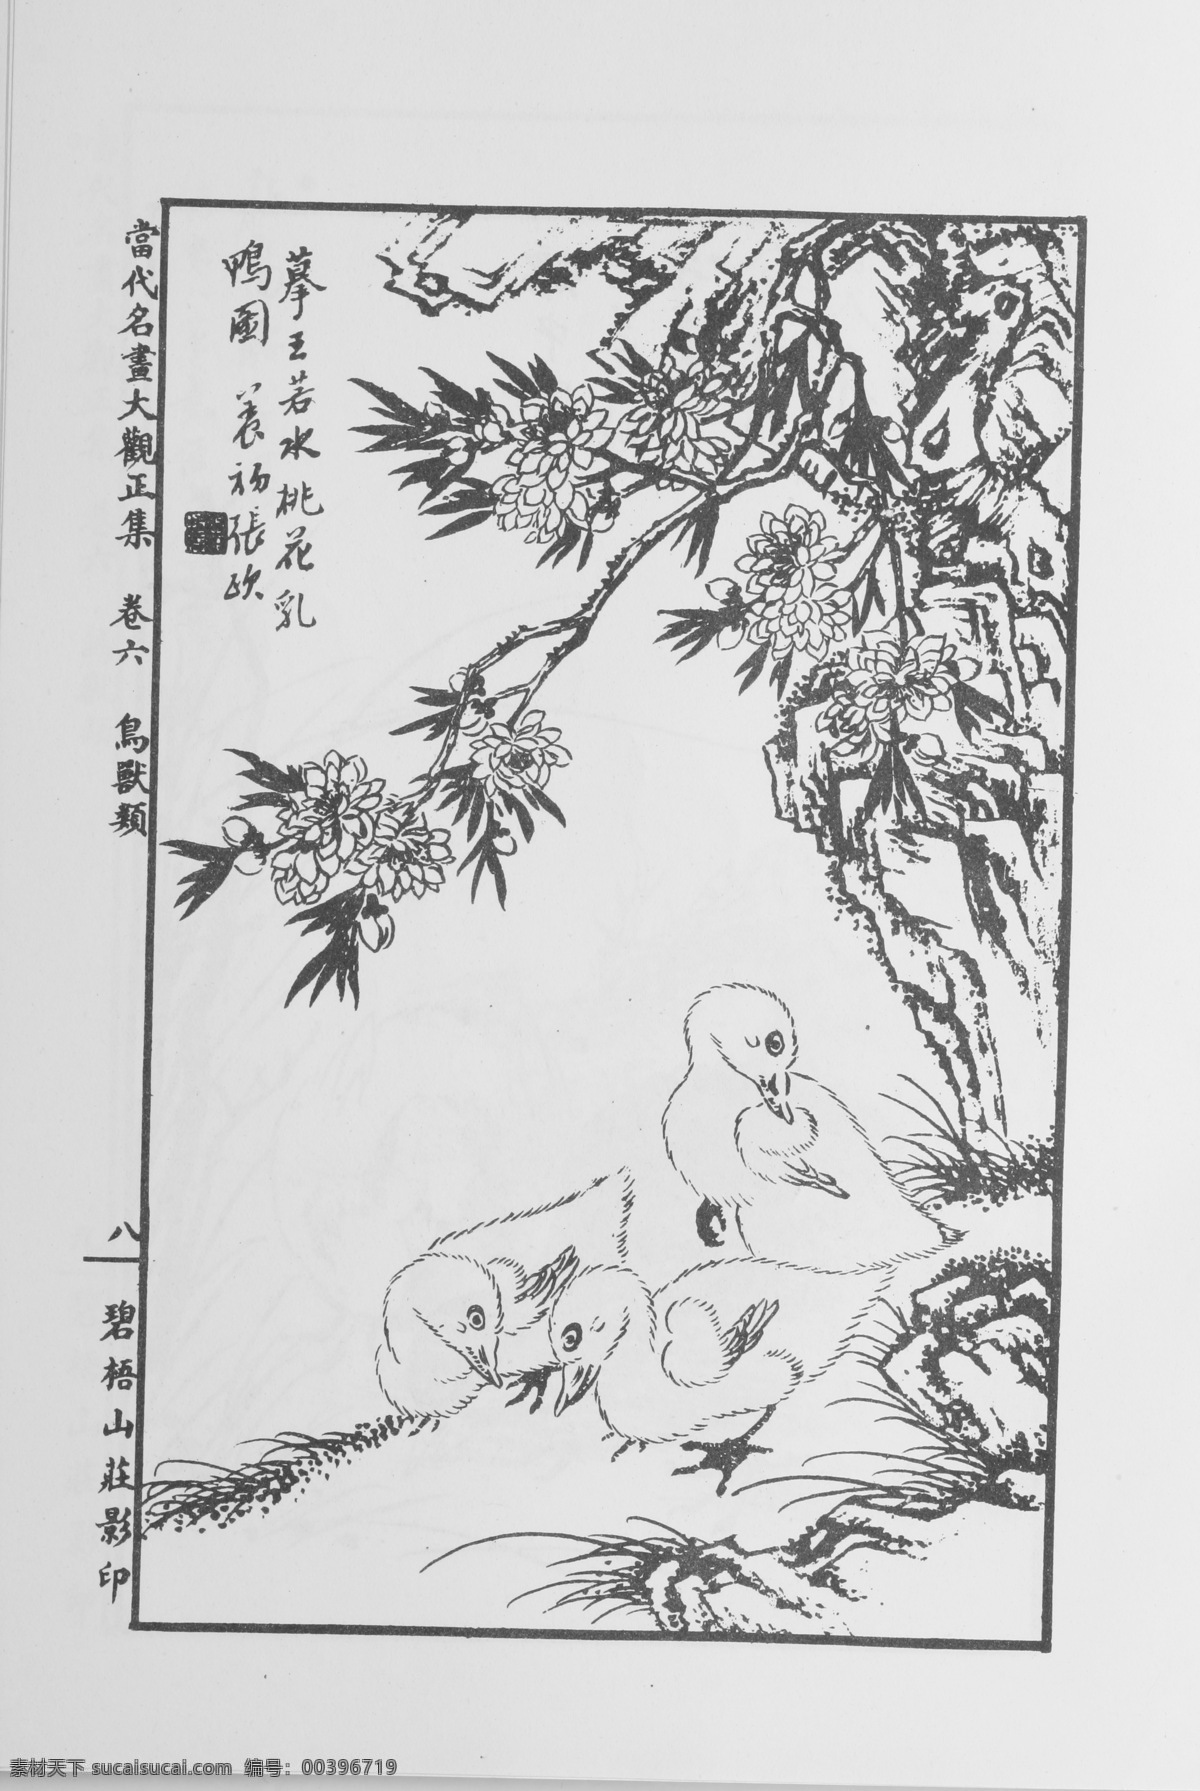 鸟兽画 中国画 当代 名画 大观 正 集 设计素材 花鸟画篇 中国画篇 书画美术 白色